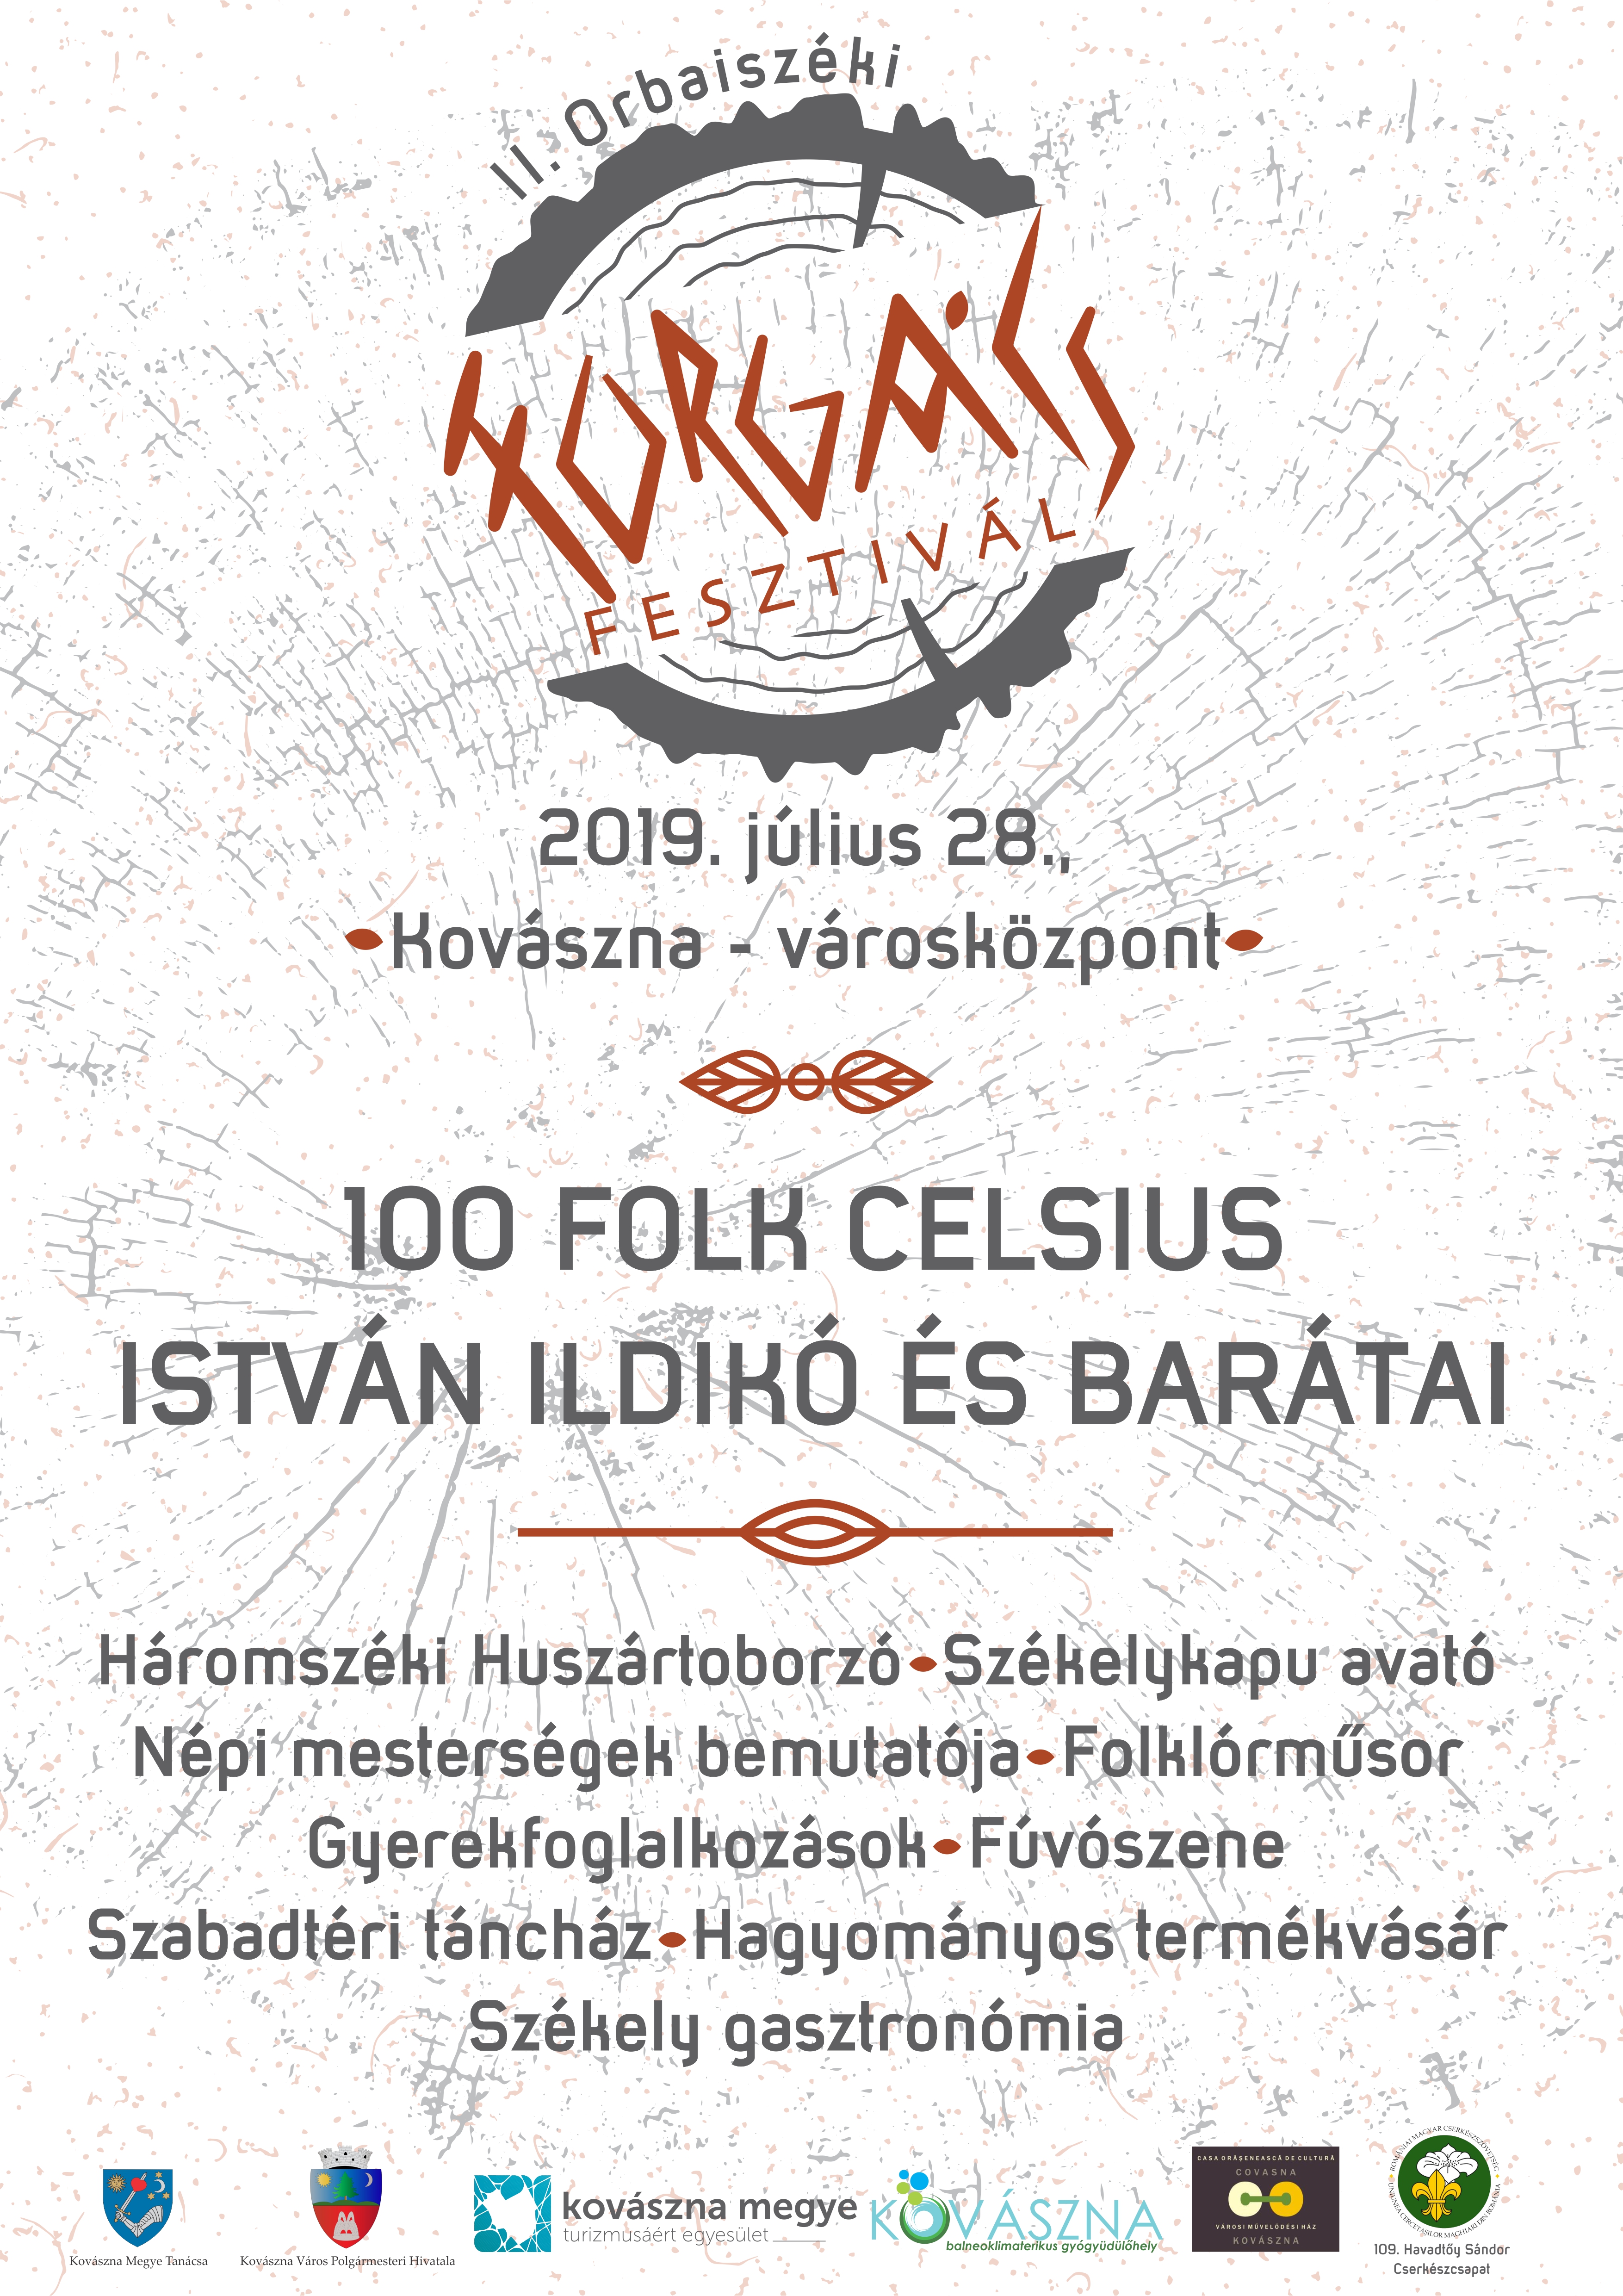 Sărbătoare comunitară axată pe valorile noastre  - Festivalul „Forgács ” din scaunul Orbai, pentru a doua oară